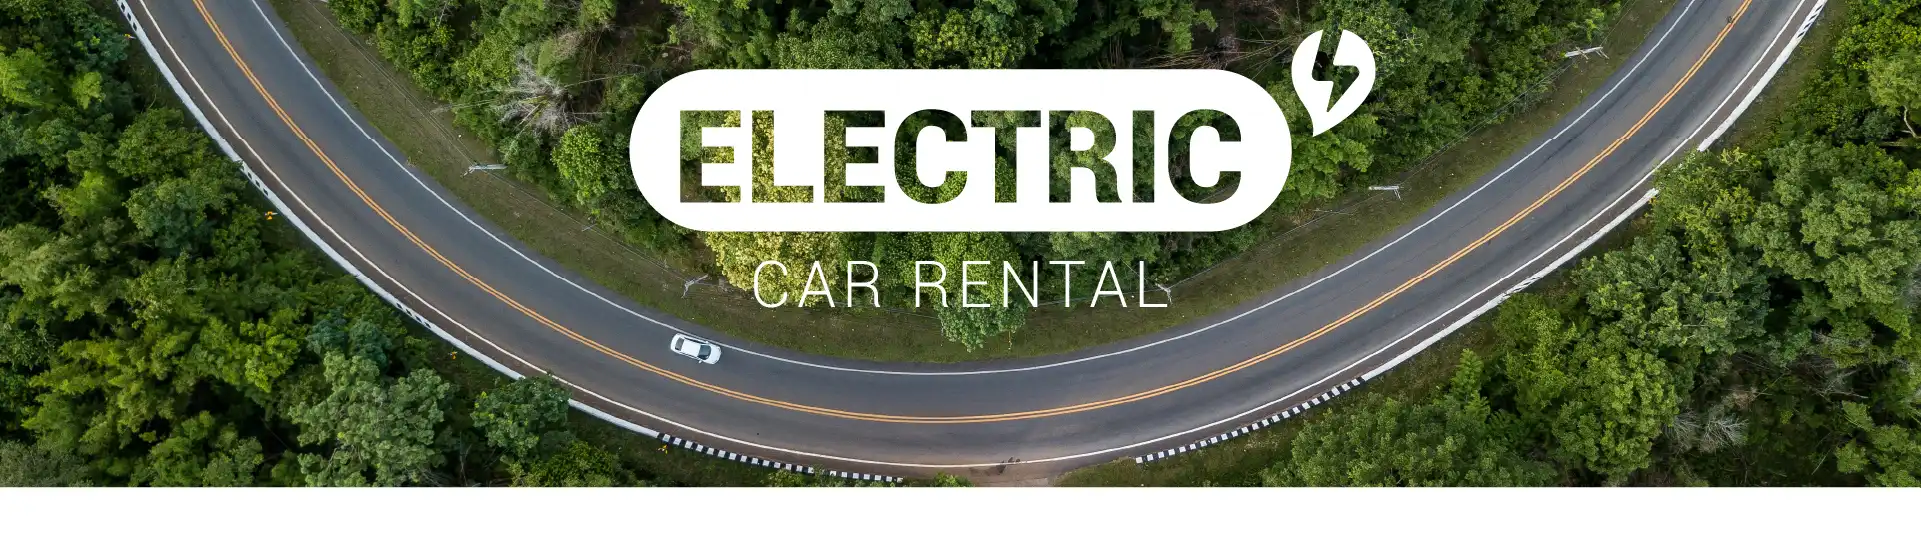 Electric car rental - Record go rent a car